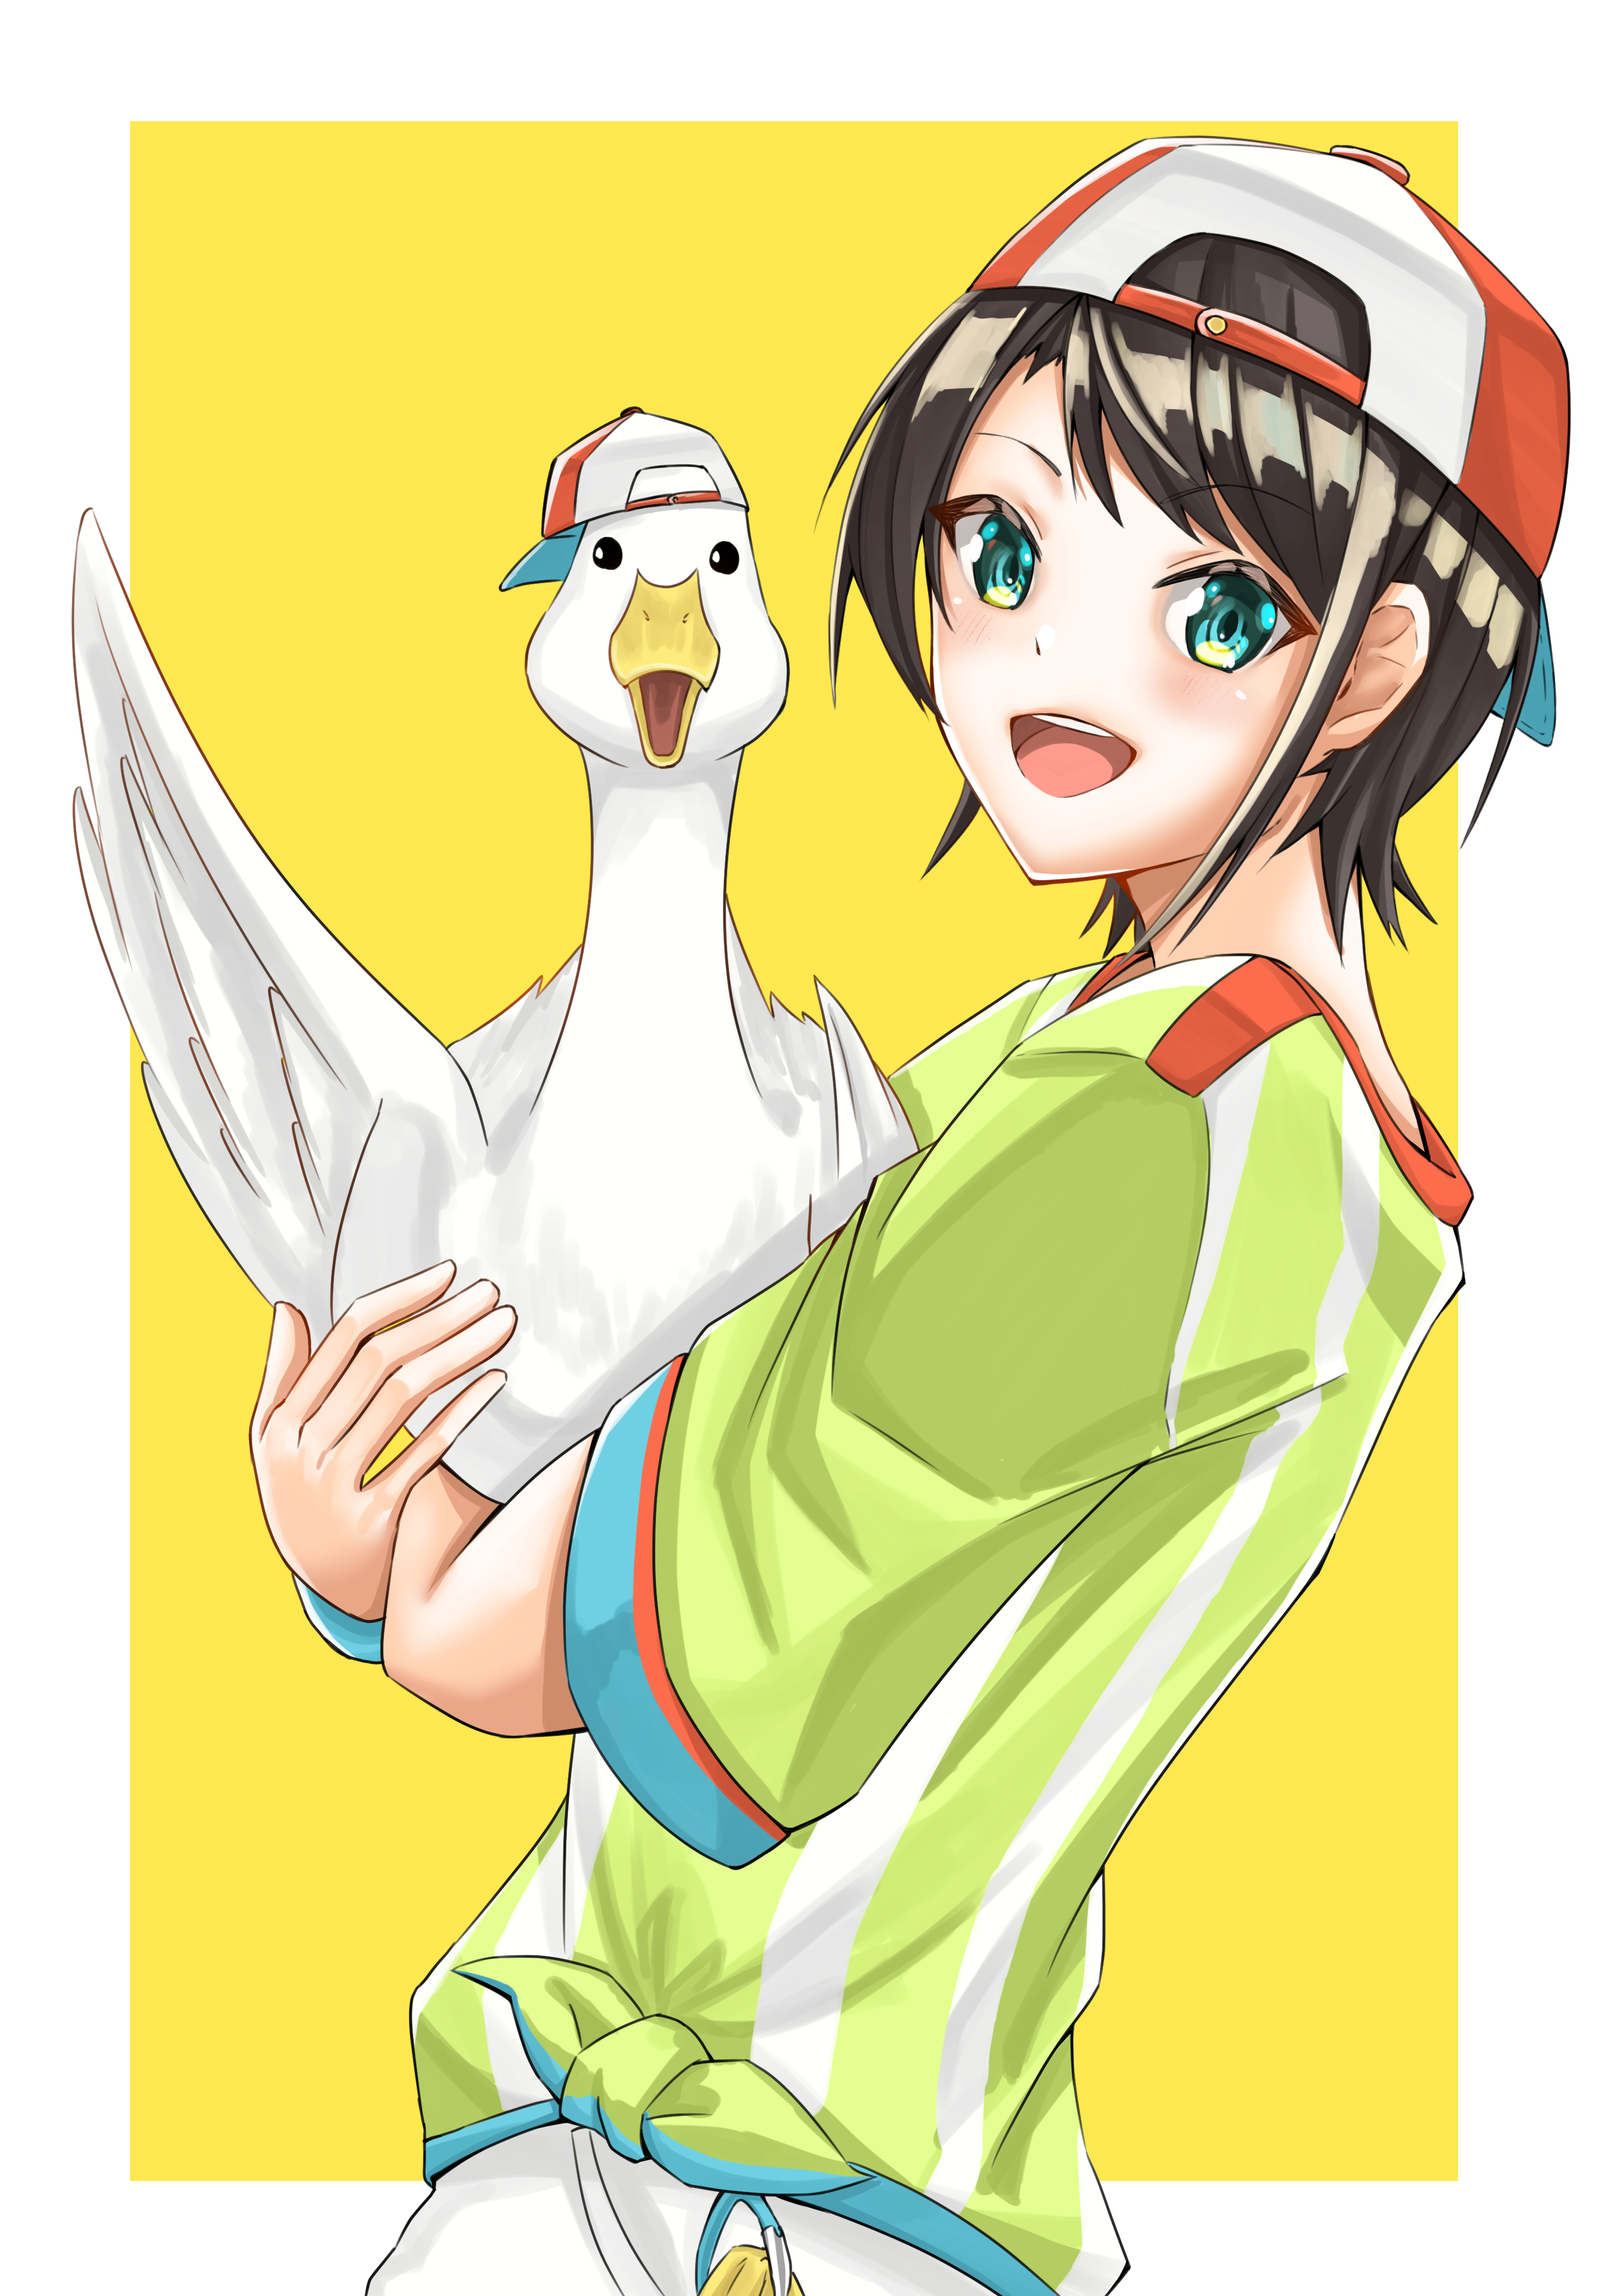 Subaru Duck Subaru Anime Image Board